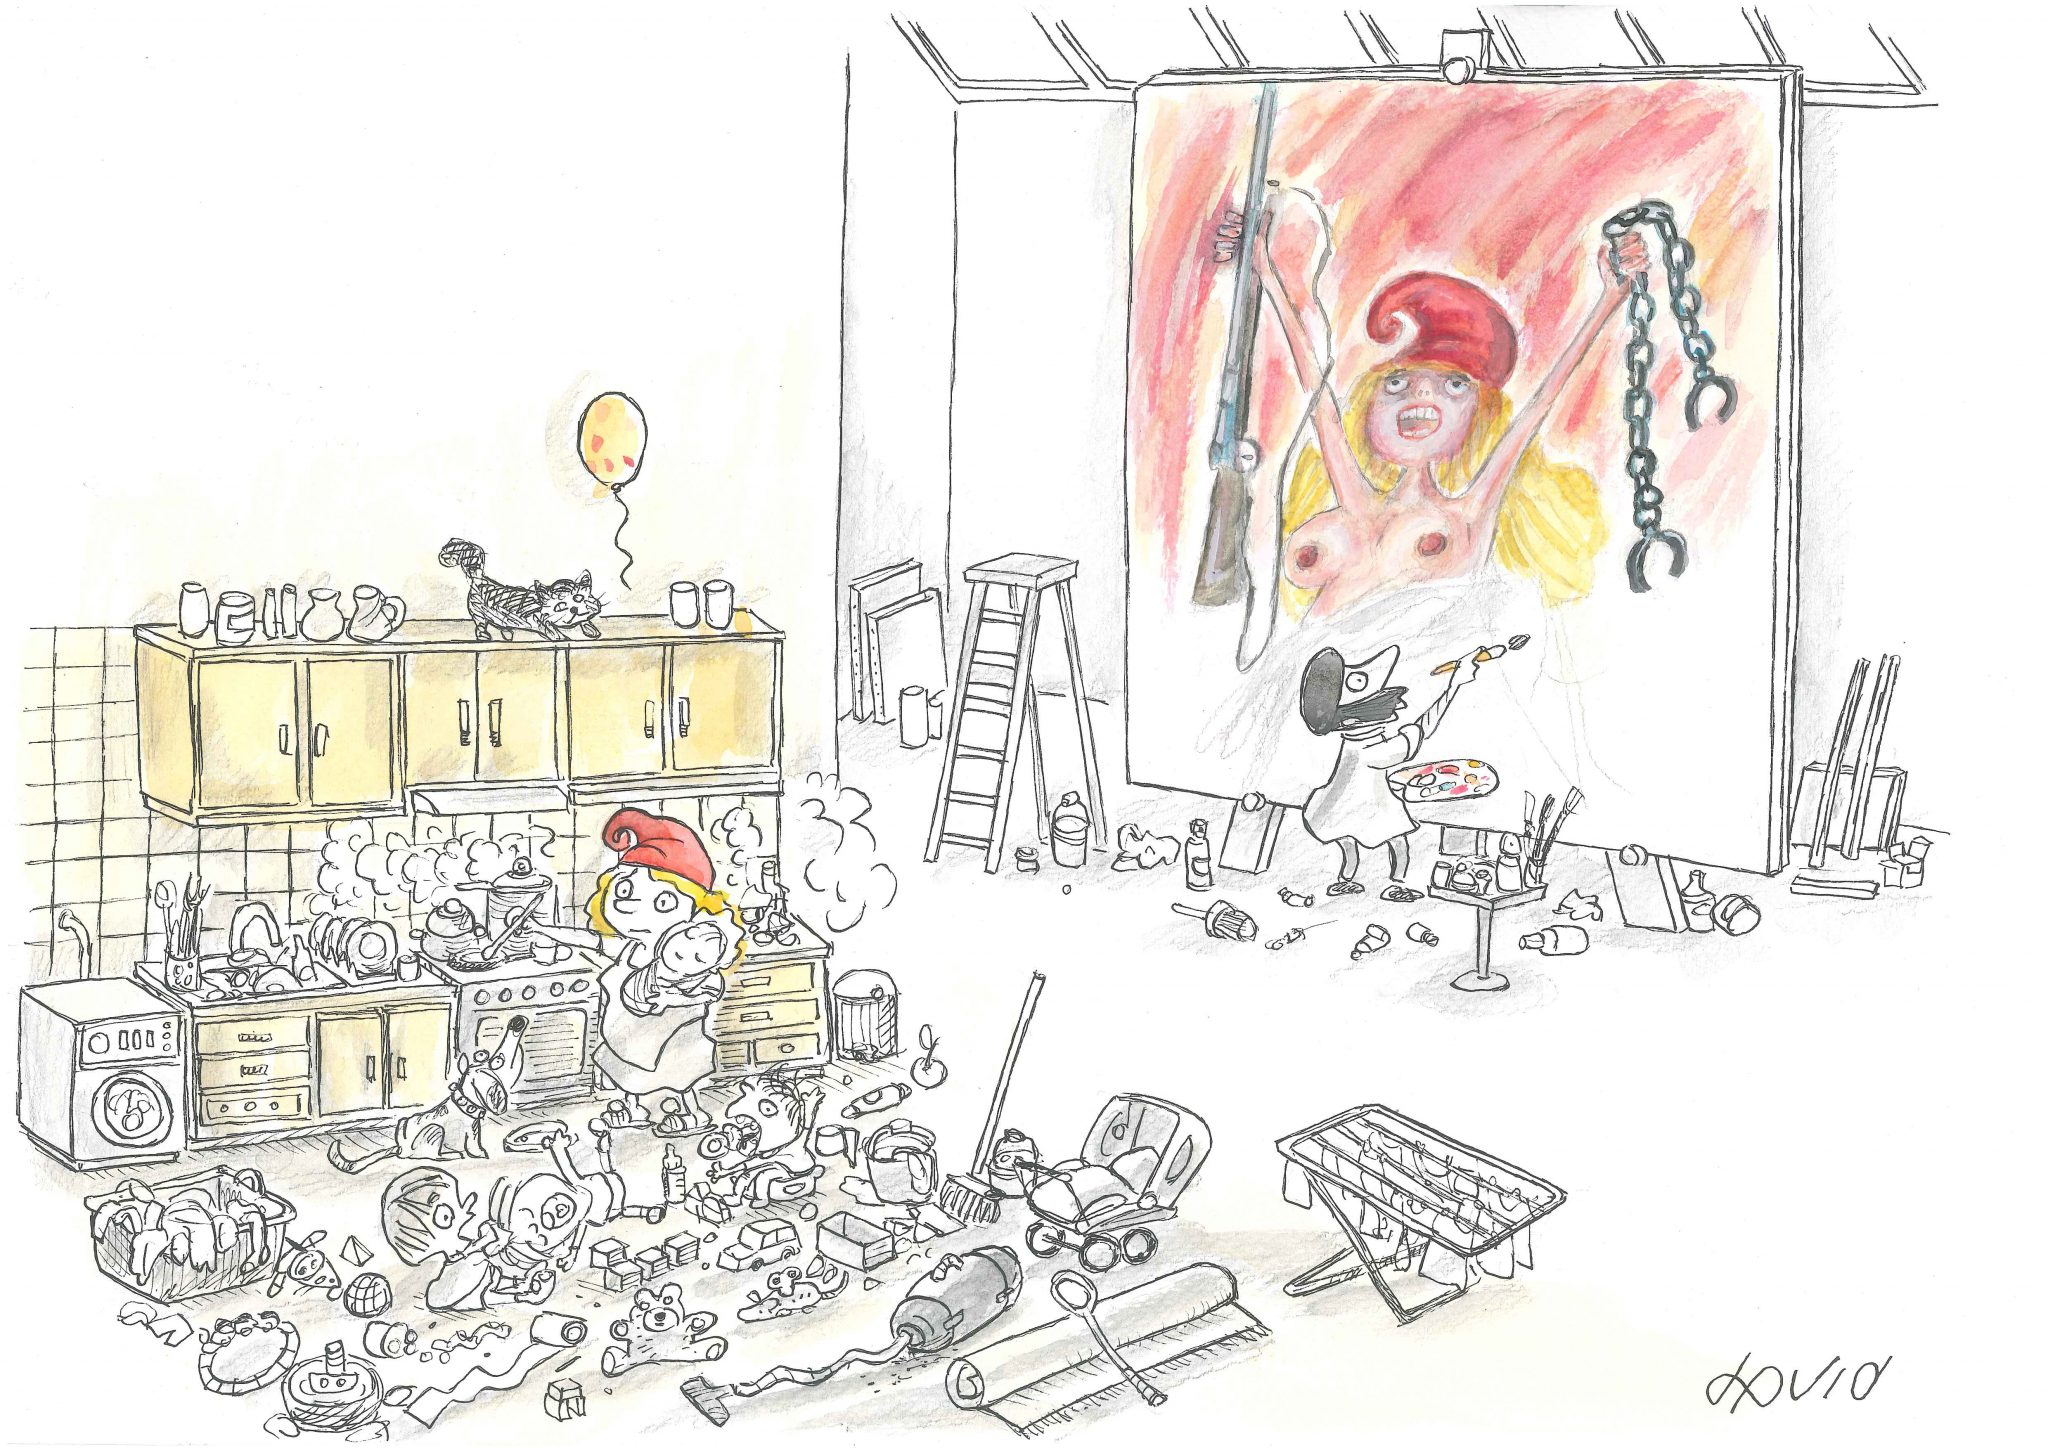 Aydın Doğan Uluslararası Karikatür Yarışması sonuçlandı